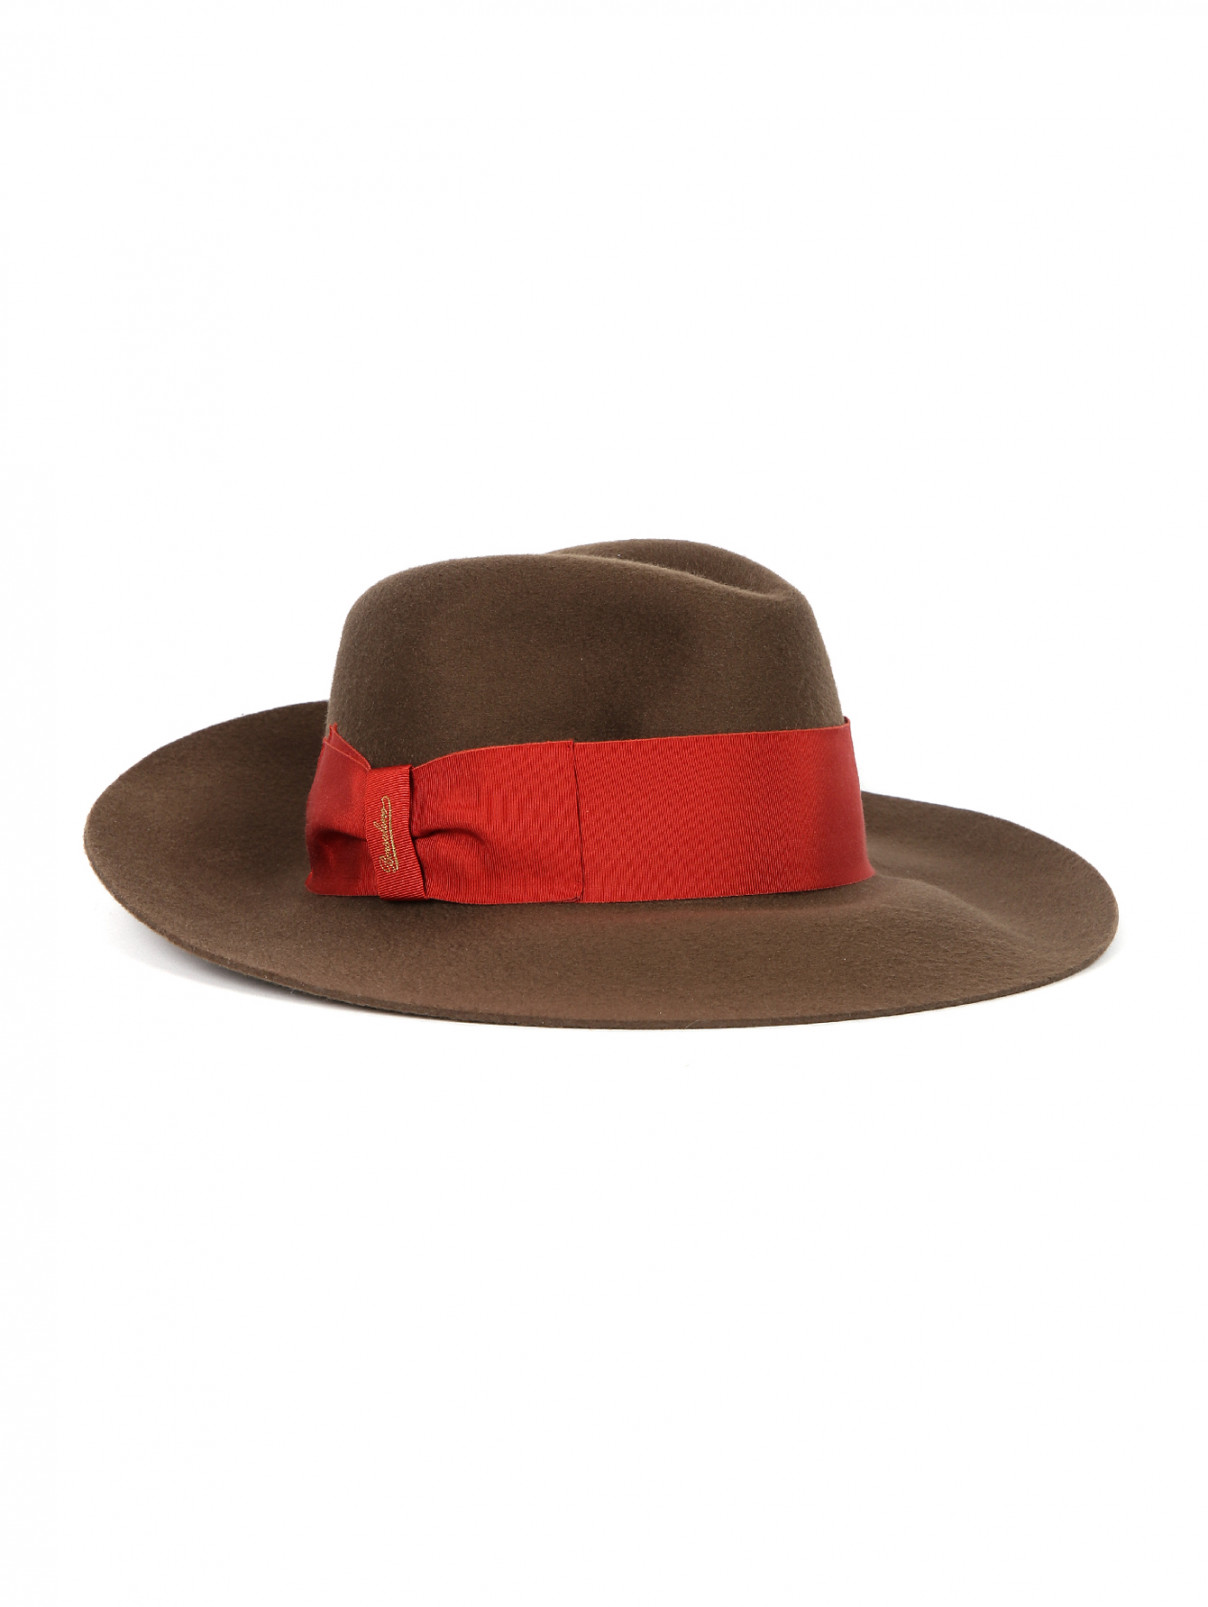 Шляпа шерстяная декорированная репсовой лентой Borsalino  –  Общий вид  – Цвет:  Коричневый